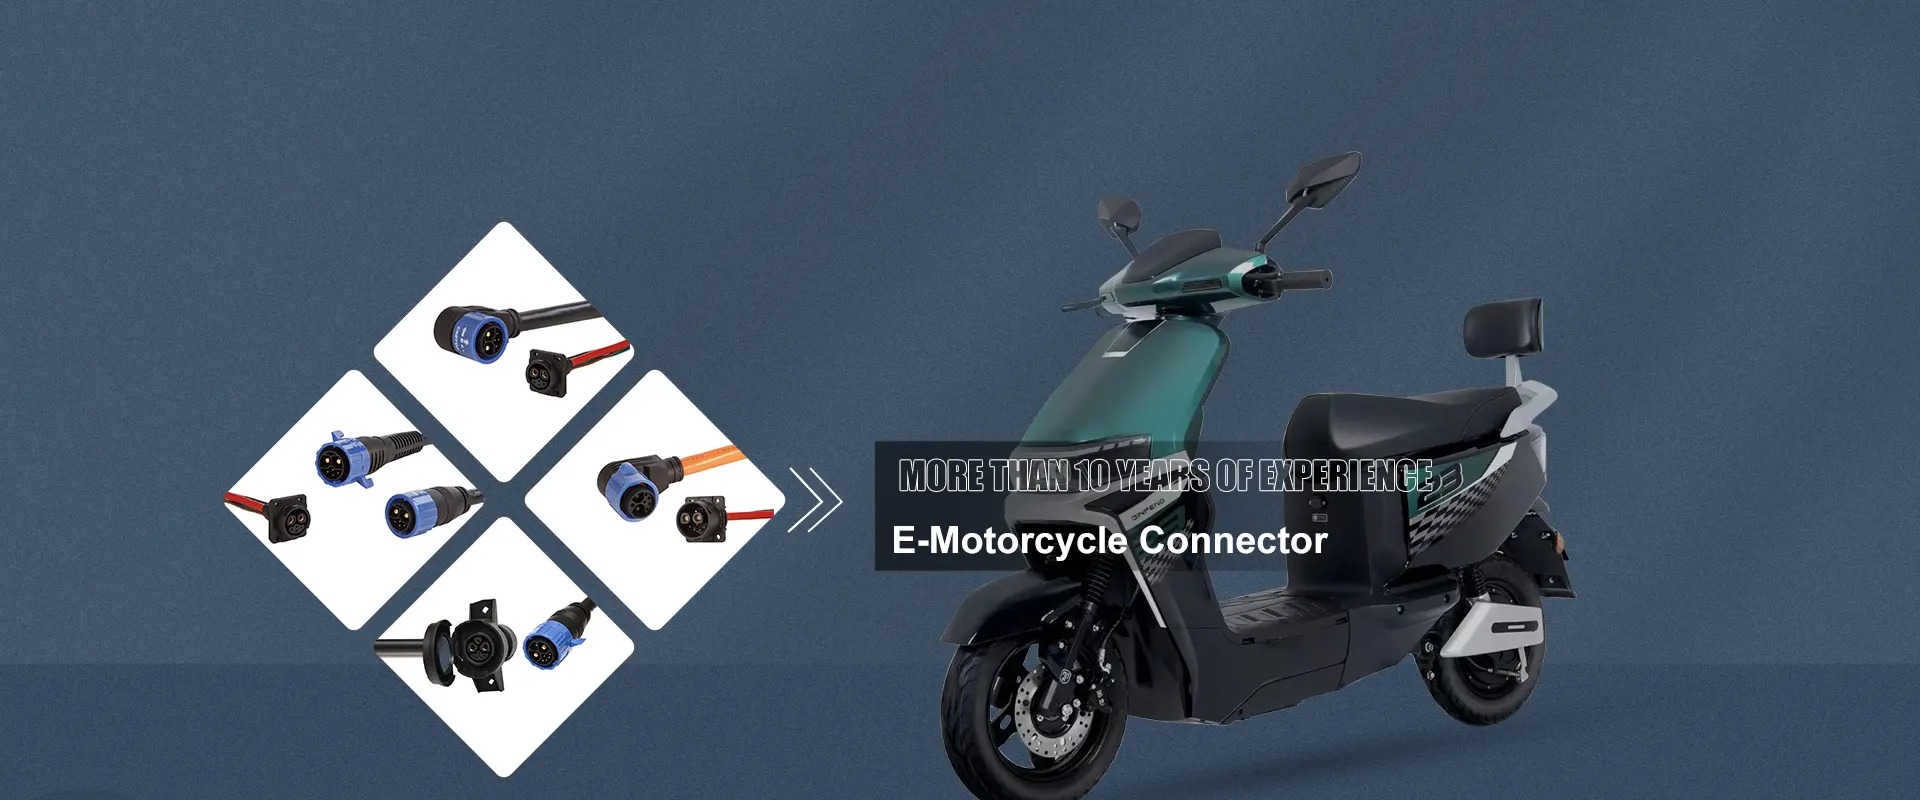 Китайски производители на конектори за електрически мотоциклети